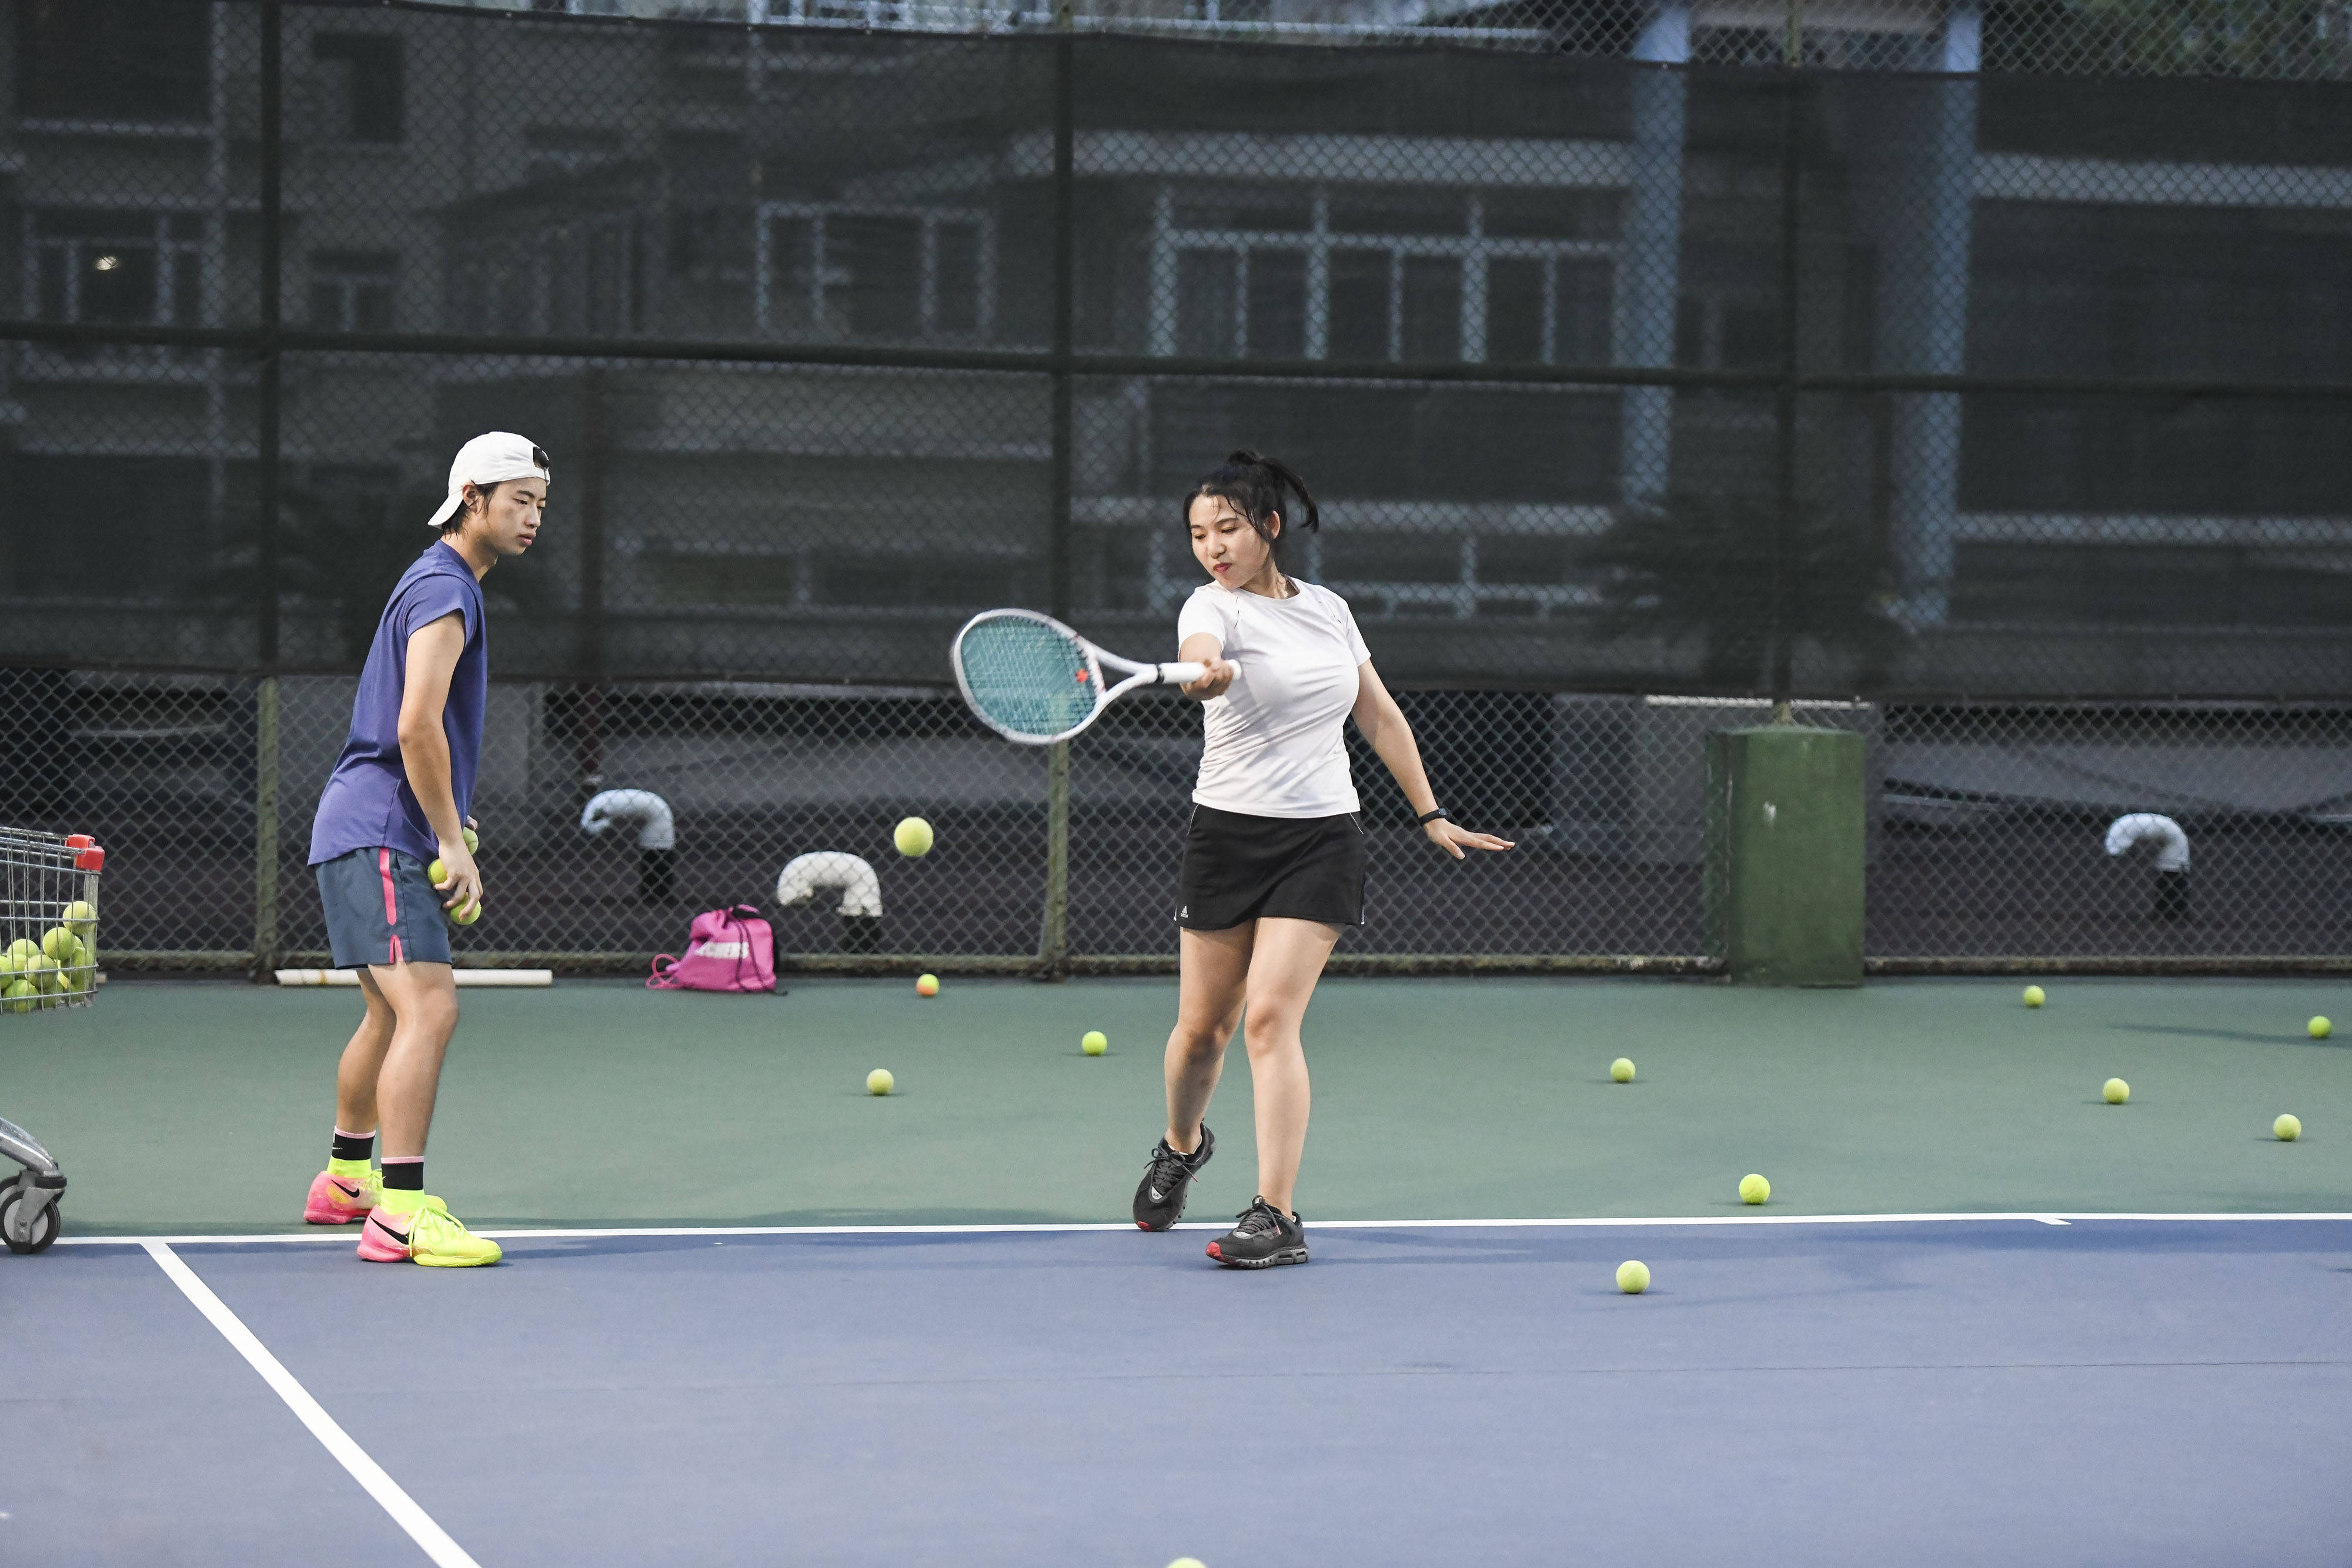 合肥:网球运动悄然兴起,学打网球成为时尚